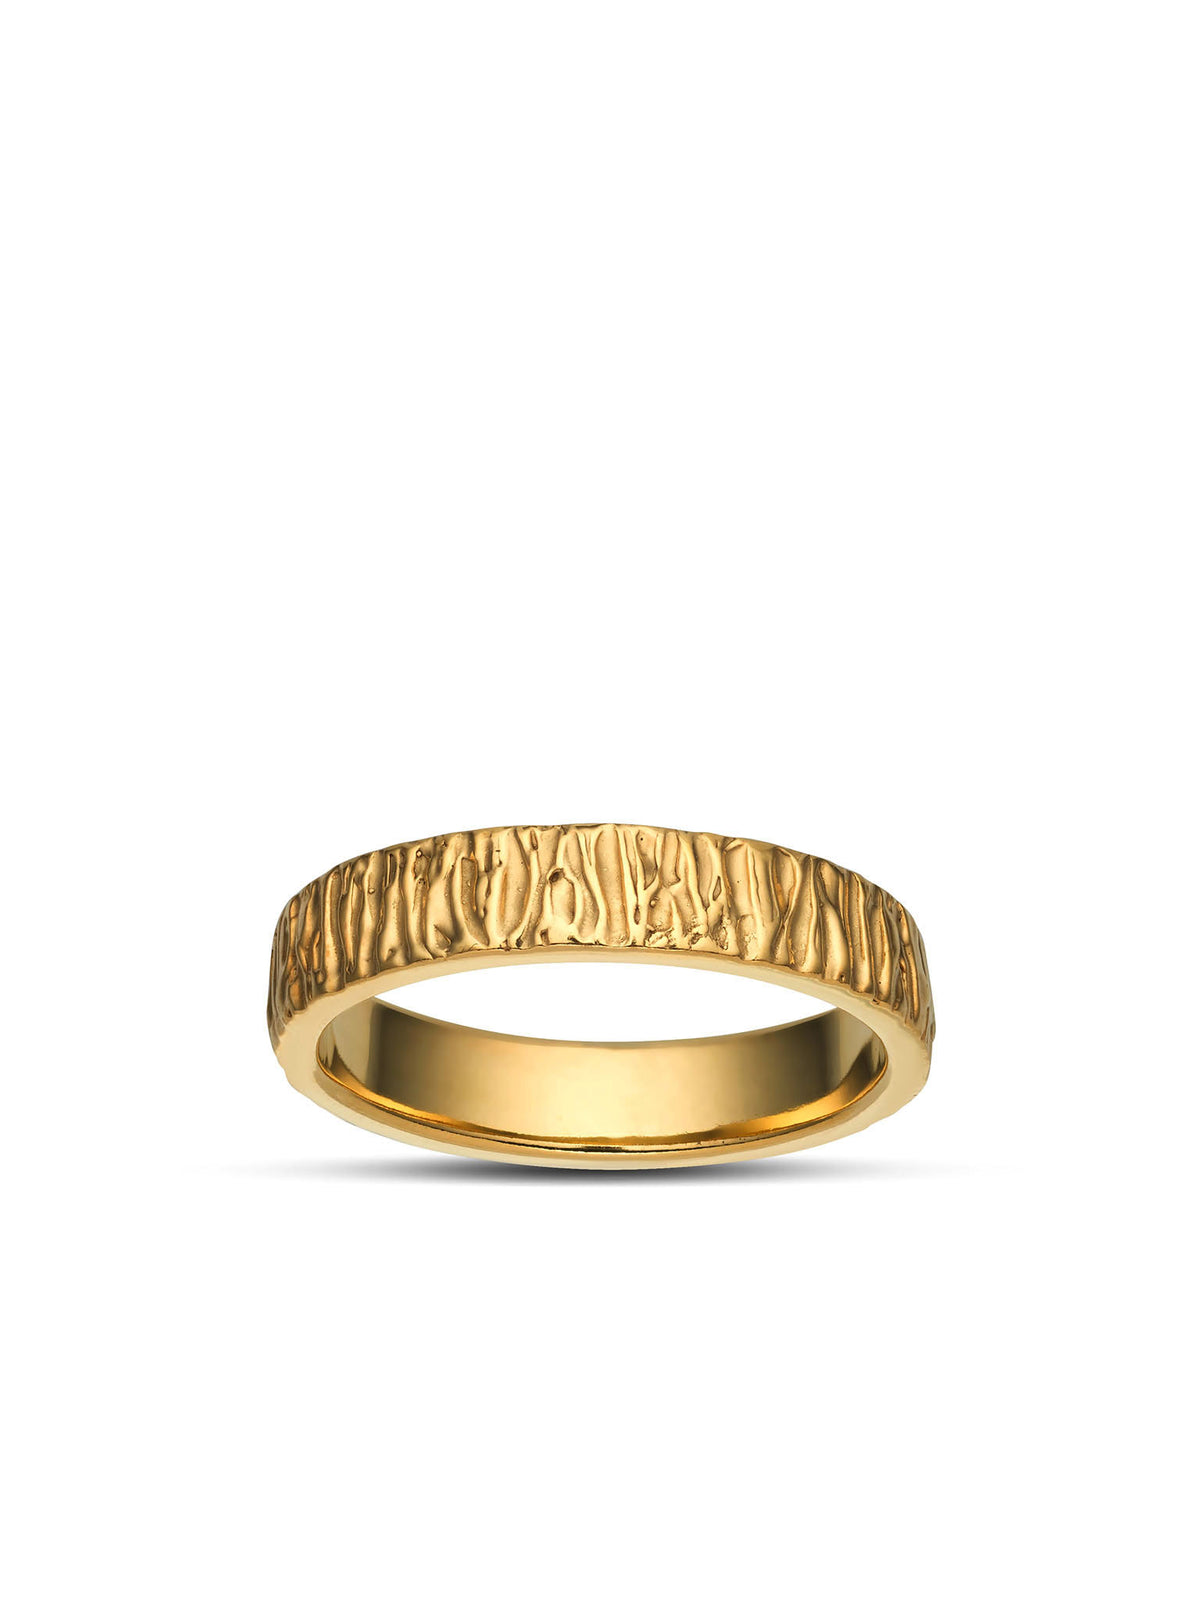 Forest Jegygyűrű / Arany 